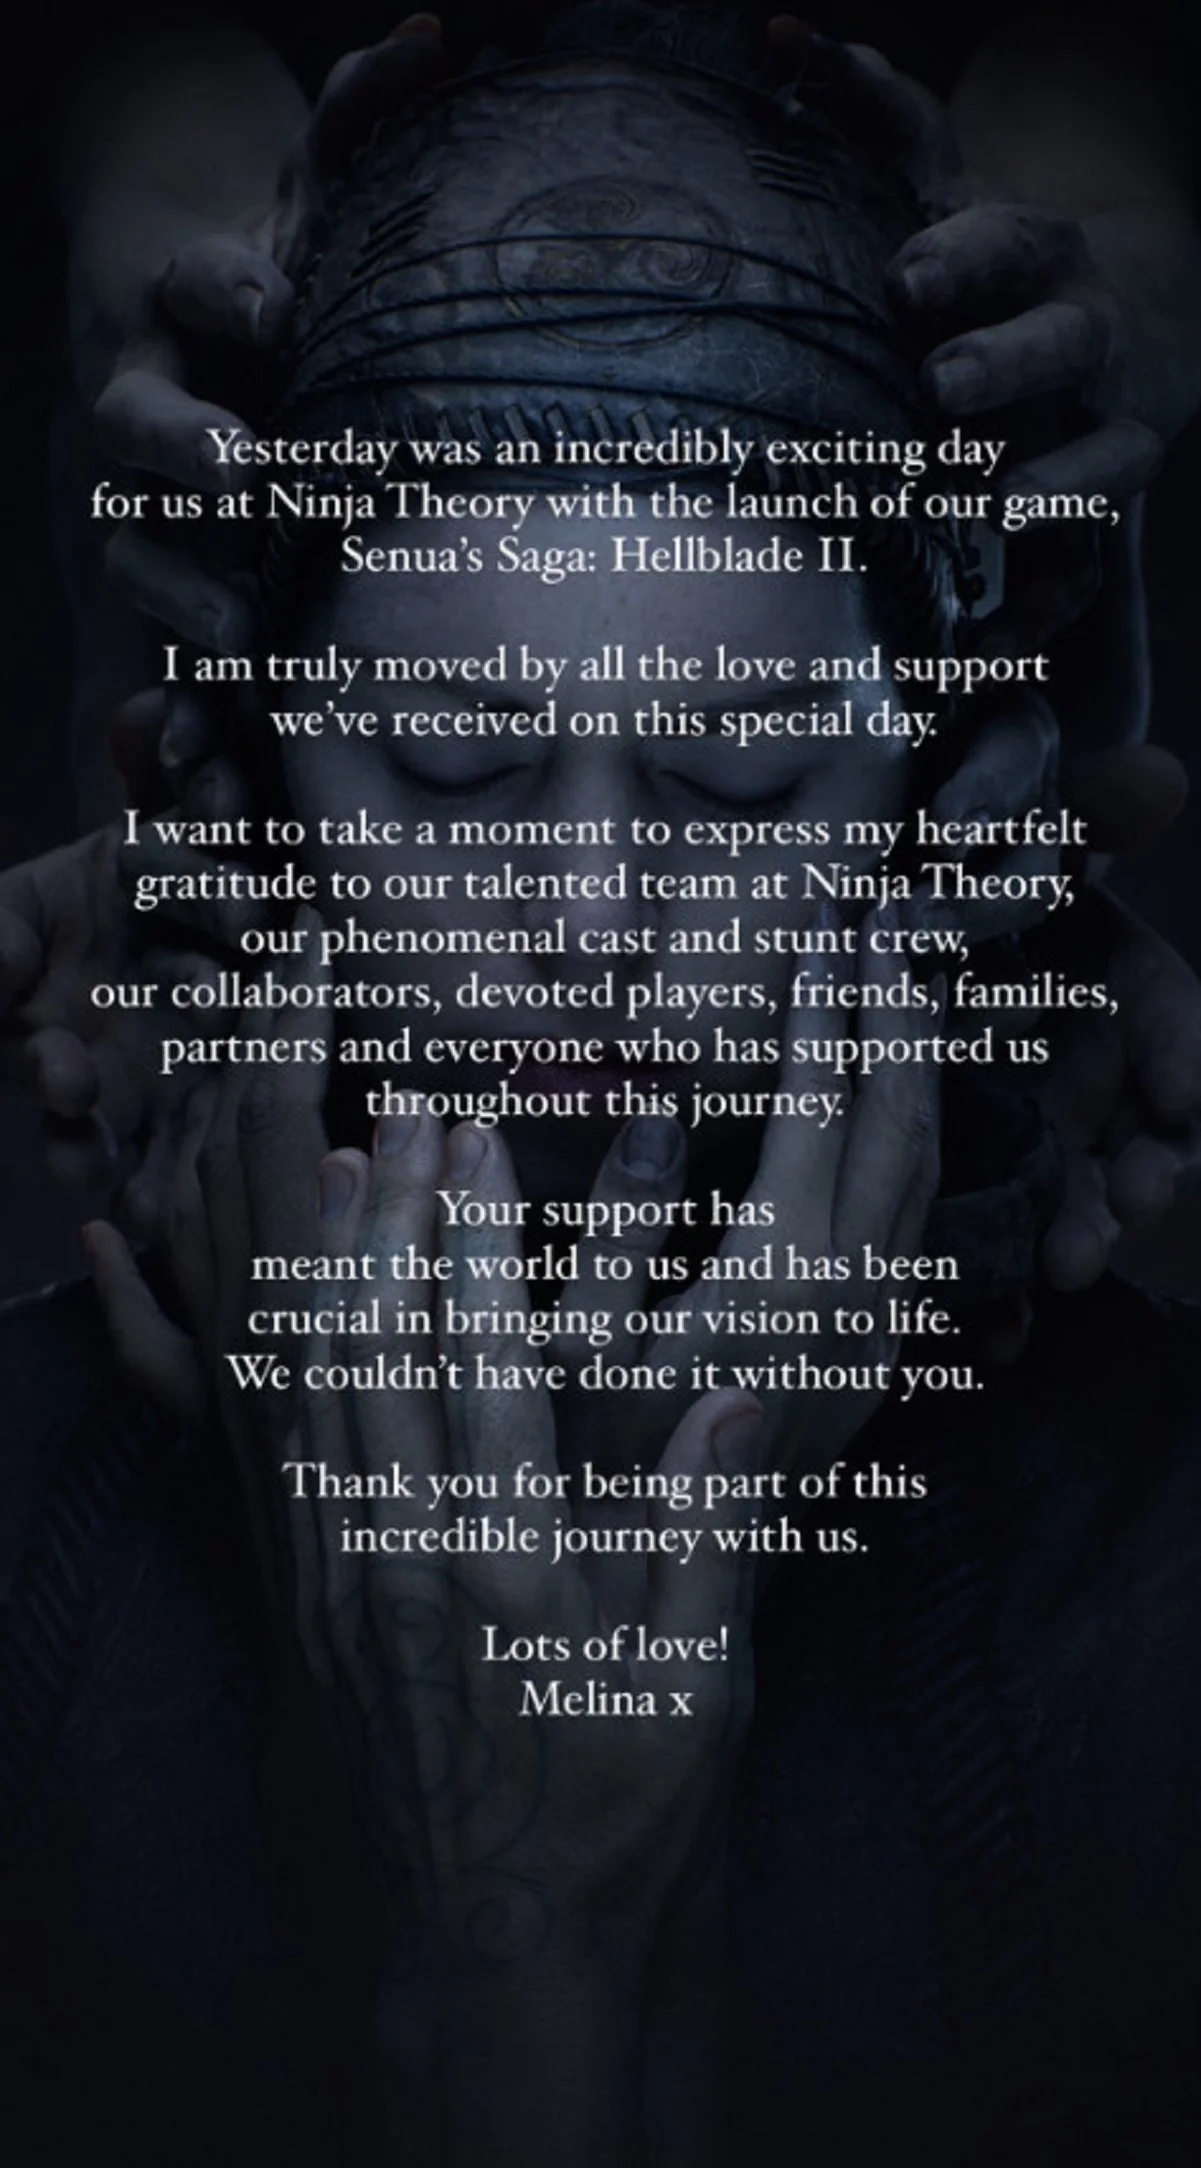 Творцы Hellblade 2 поблагодарили игроков за хорошие отзывы и поддержку - фото 2